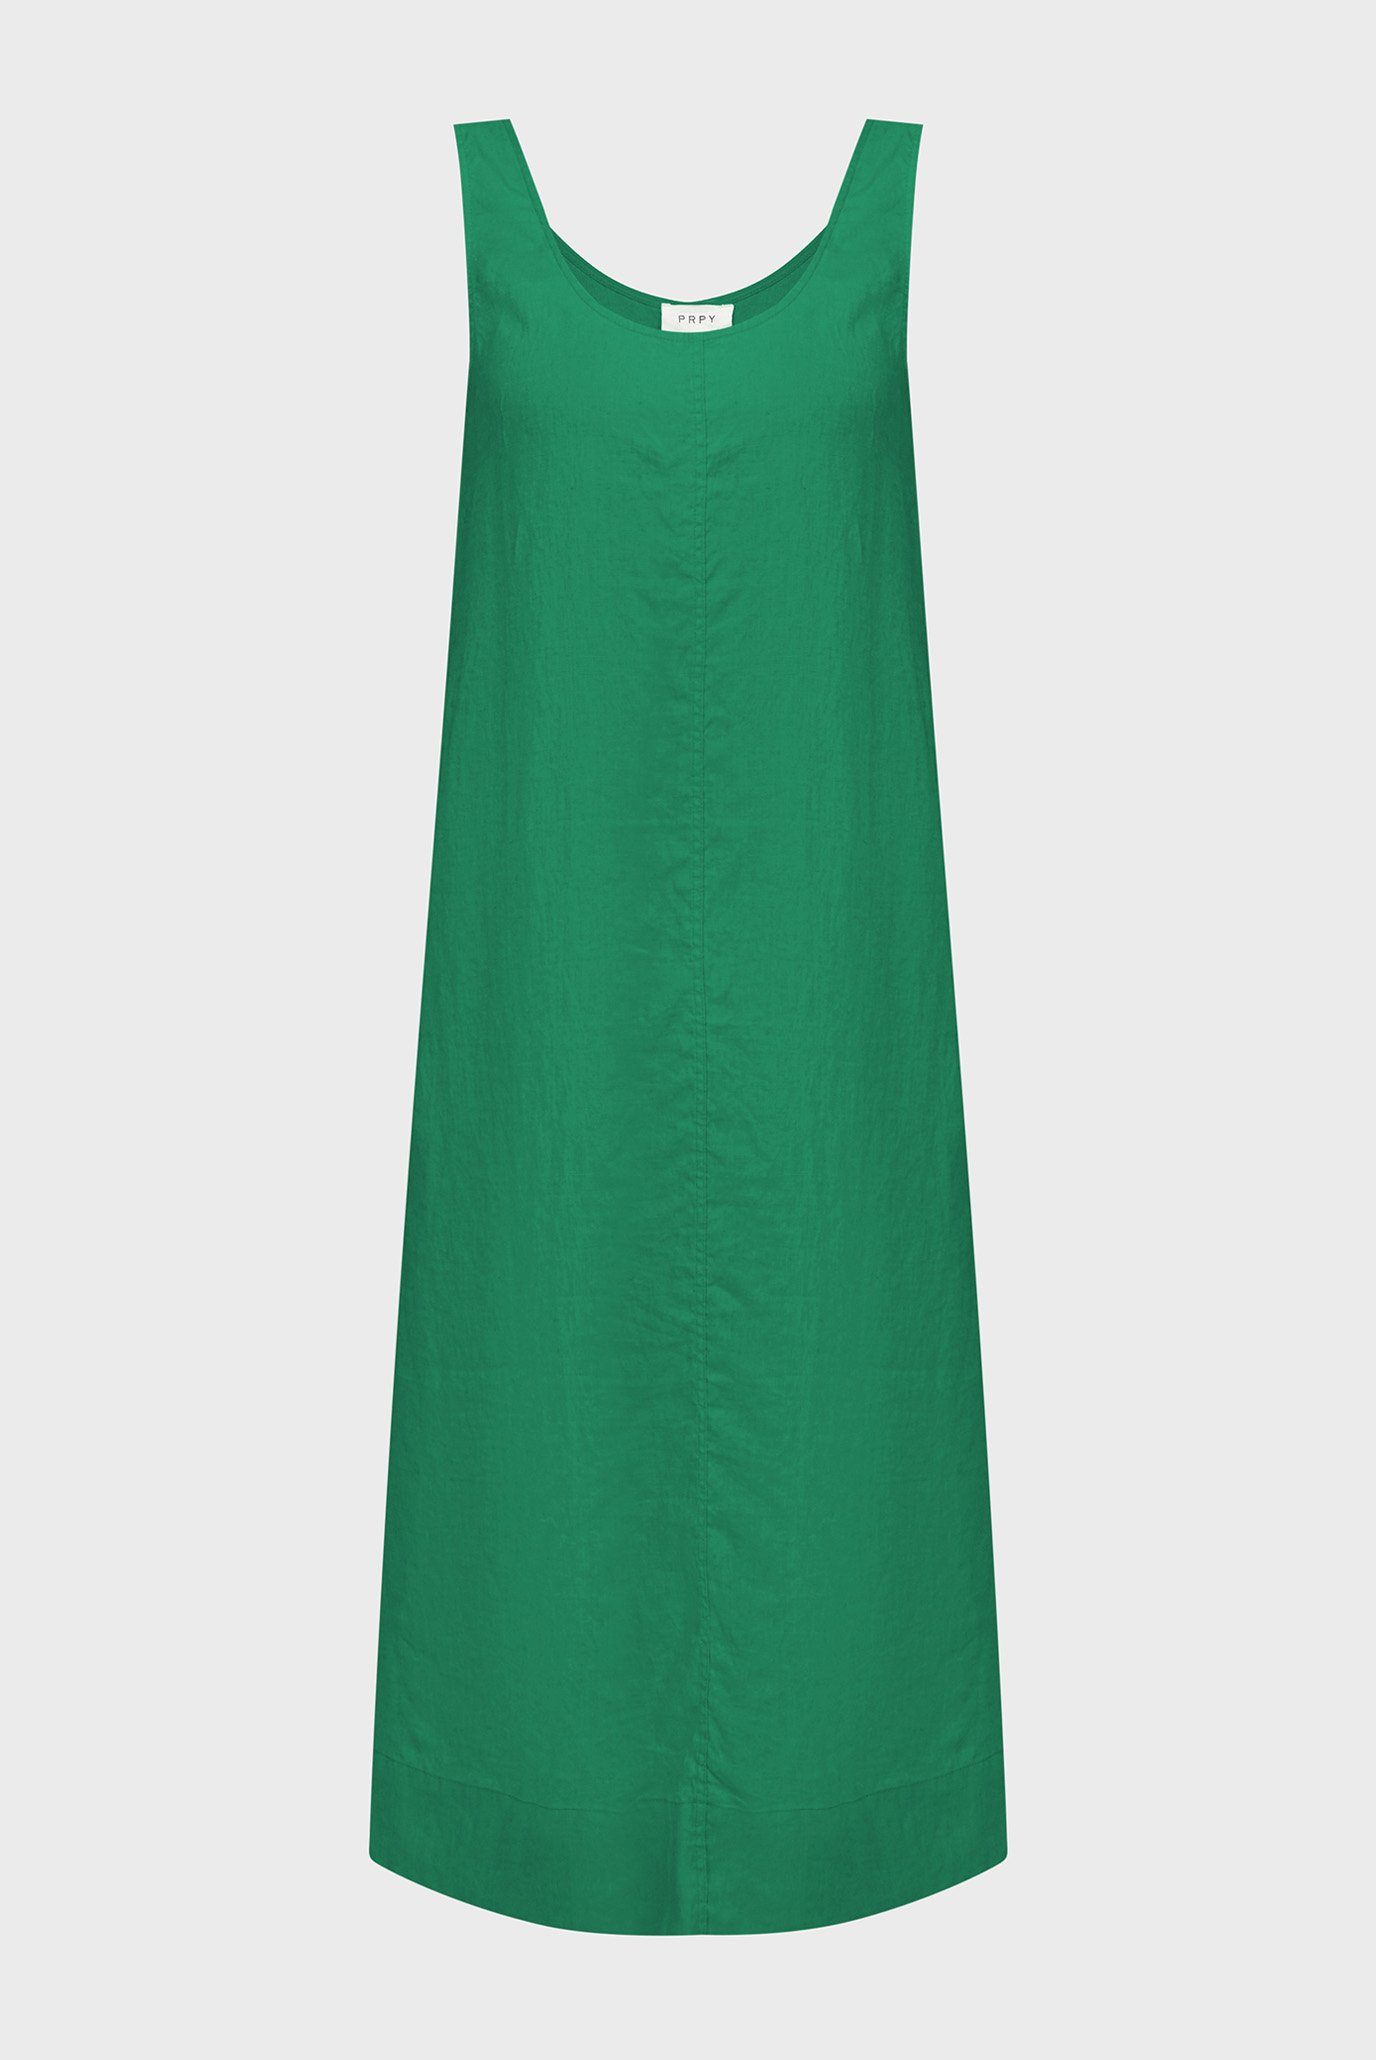 Жіночий зелений лляний сарафан WLDRE019 1